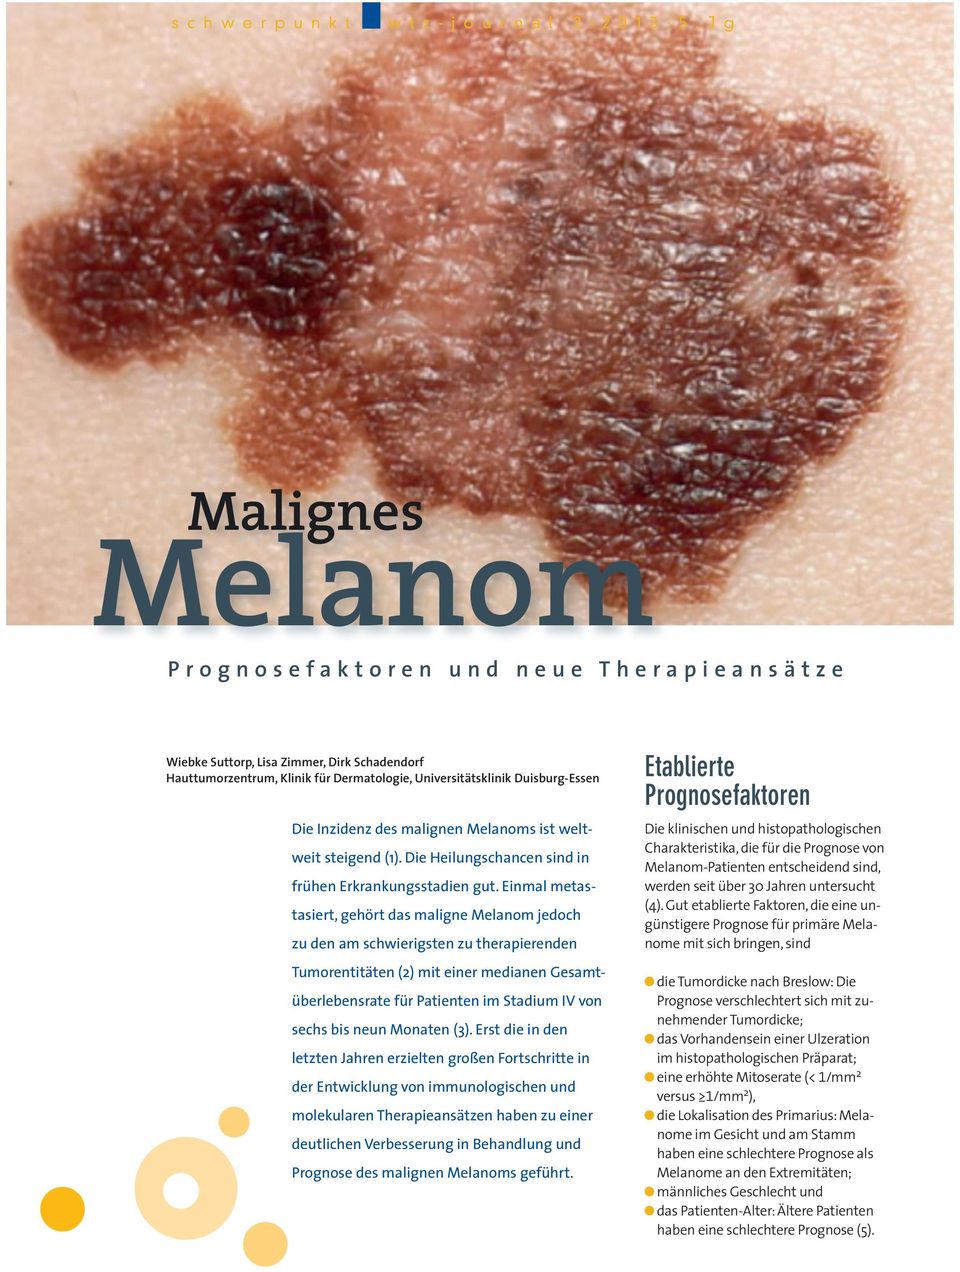 Einmal metastasiert, gehört das maligne Melanom jedoch zu den am schwierigsten zu therapierenden Tumorentitäten (2) mit einer medianen Gesamtüberlebensrate für Patienten im Stadium IV von sechs bis